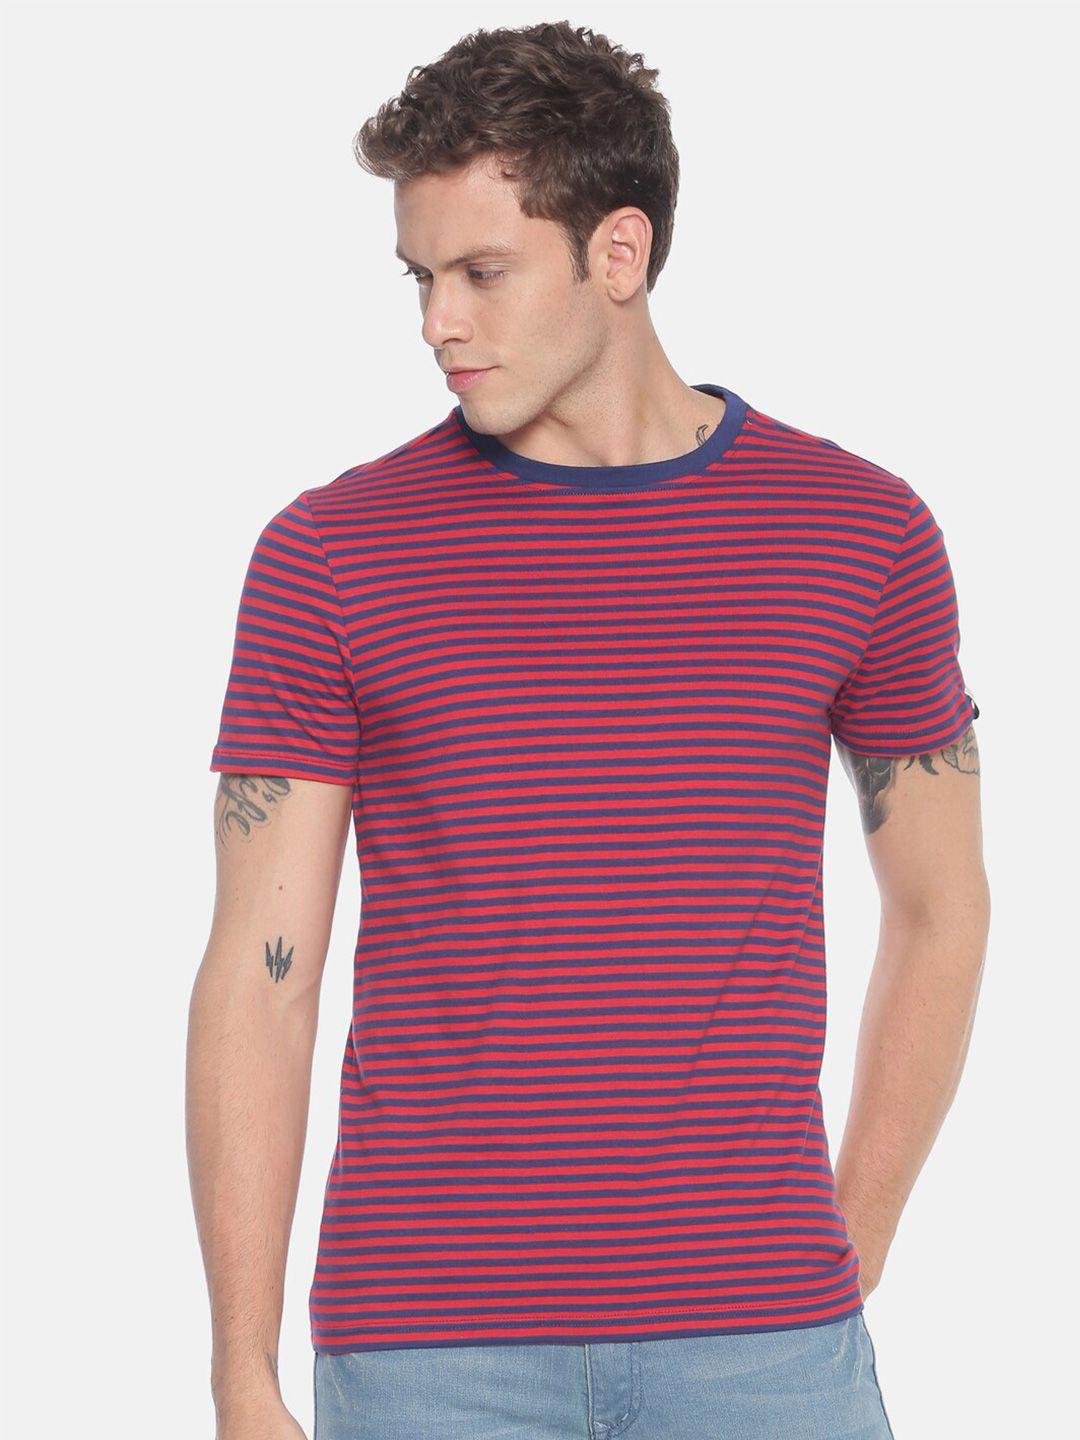 steenbok men red & blue striped pure cotton t-shirt